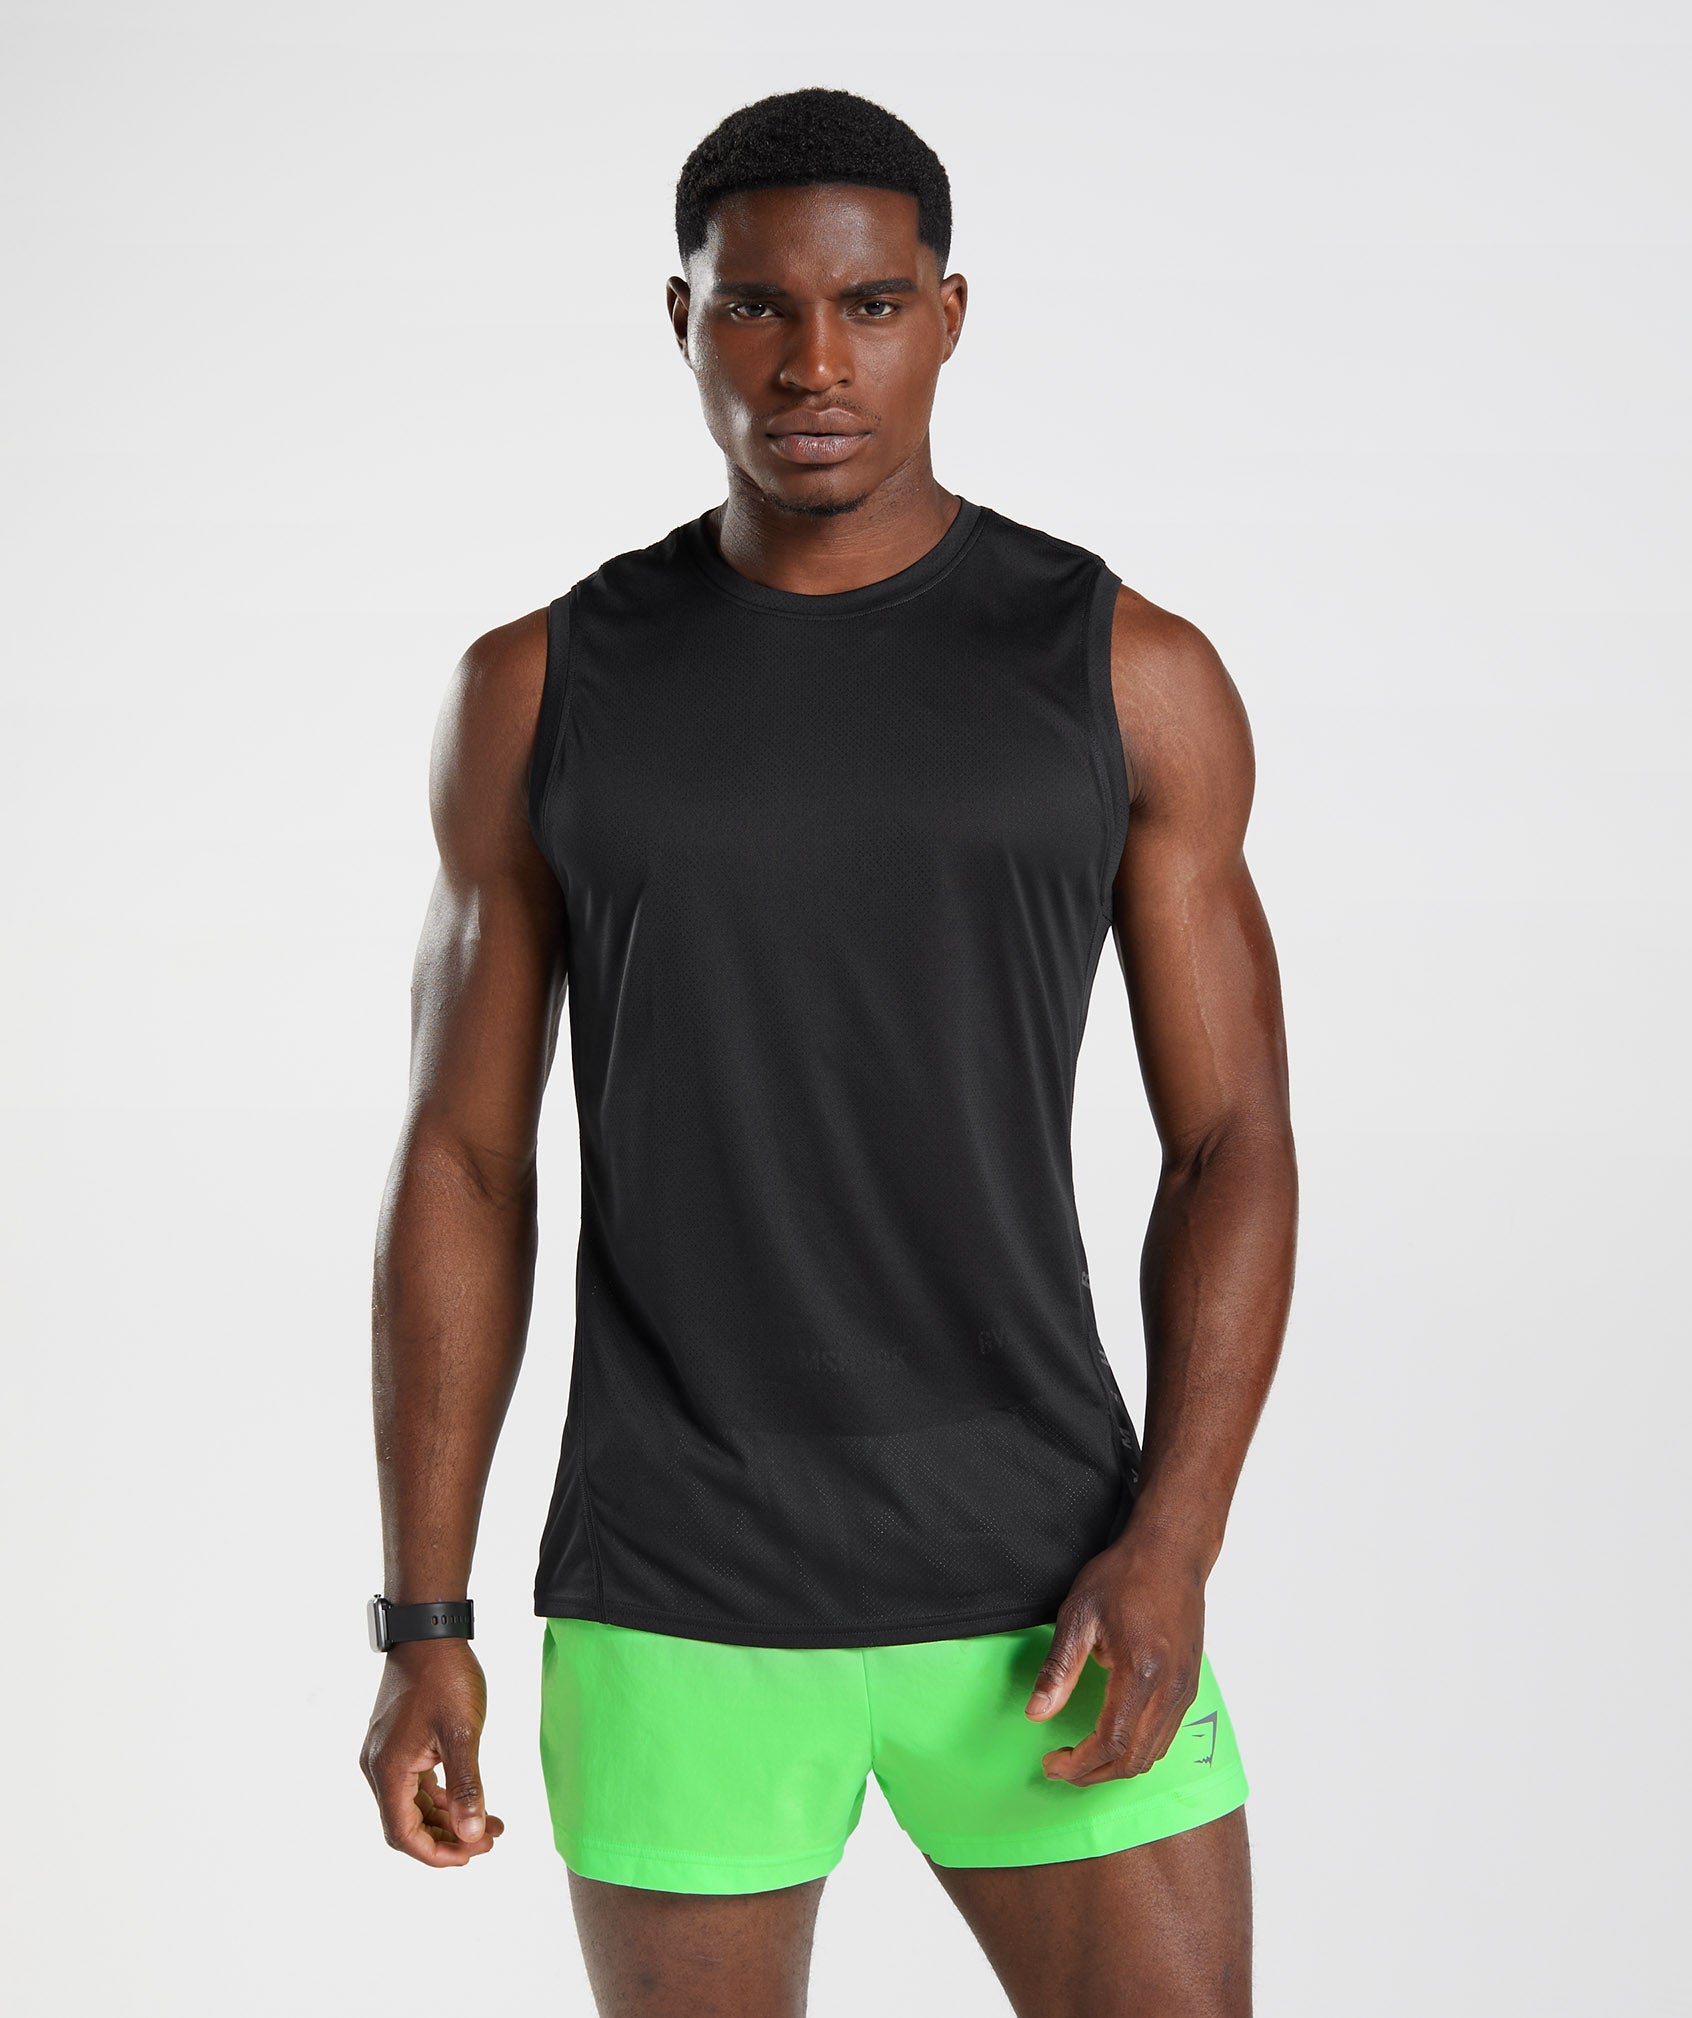 2015 gymshark tank top men Cotton Sleeveless sport shirt Gym